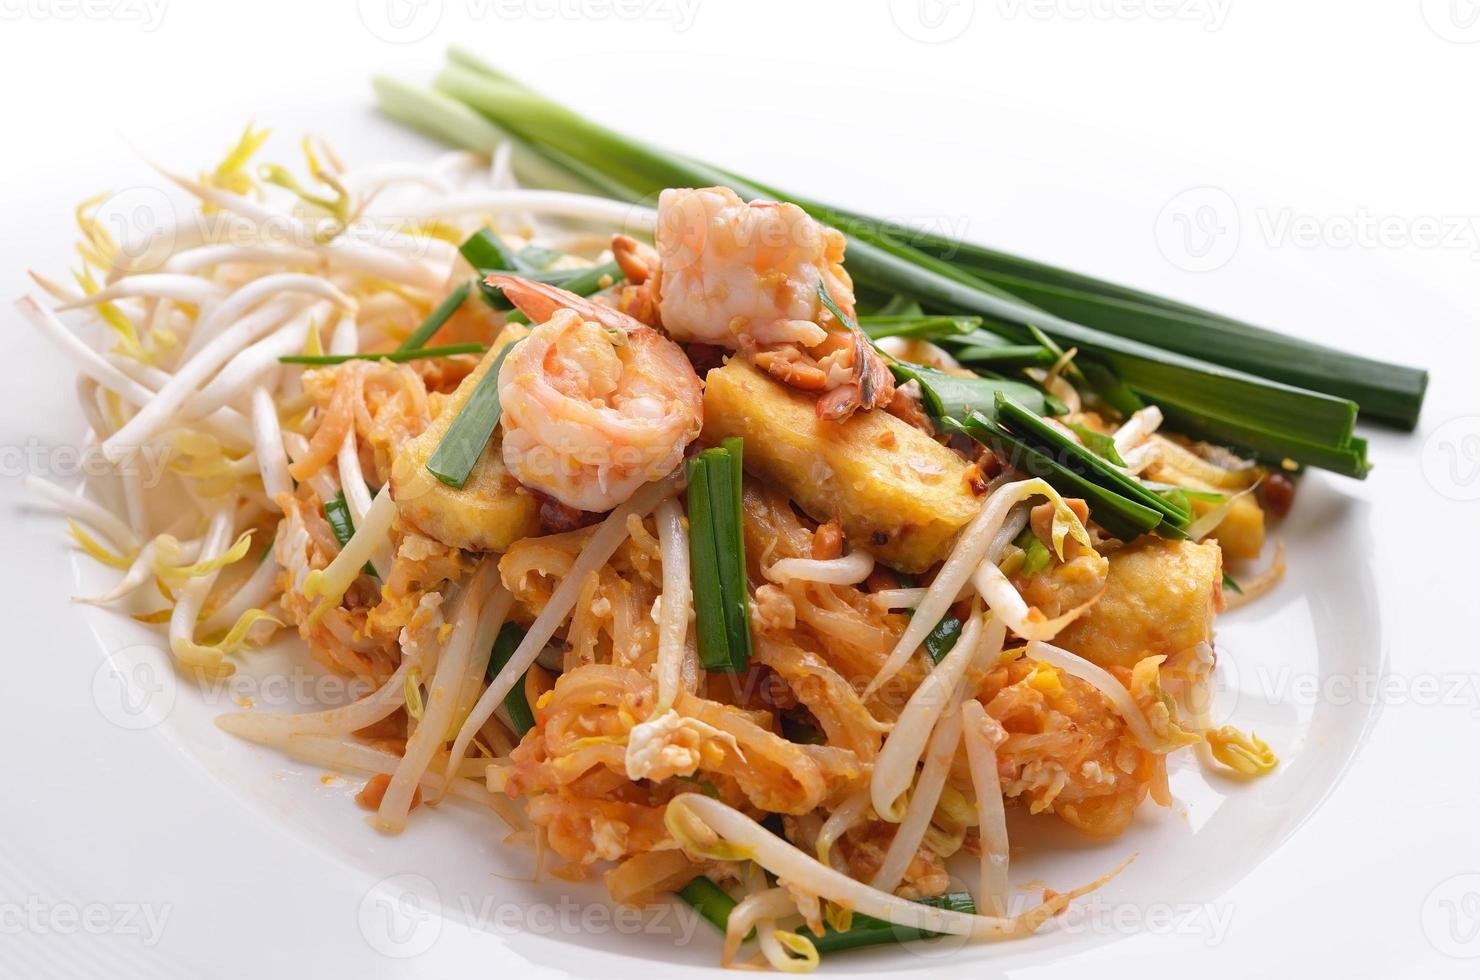 almohadilla de comida tailandesa, salteado de fideos con camarones foto